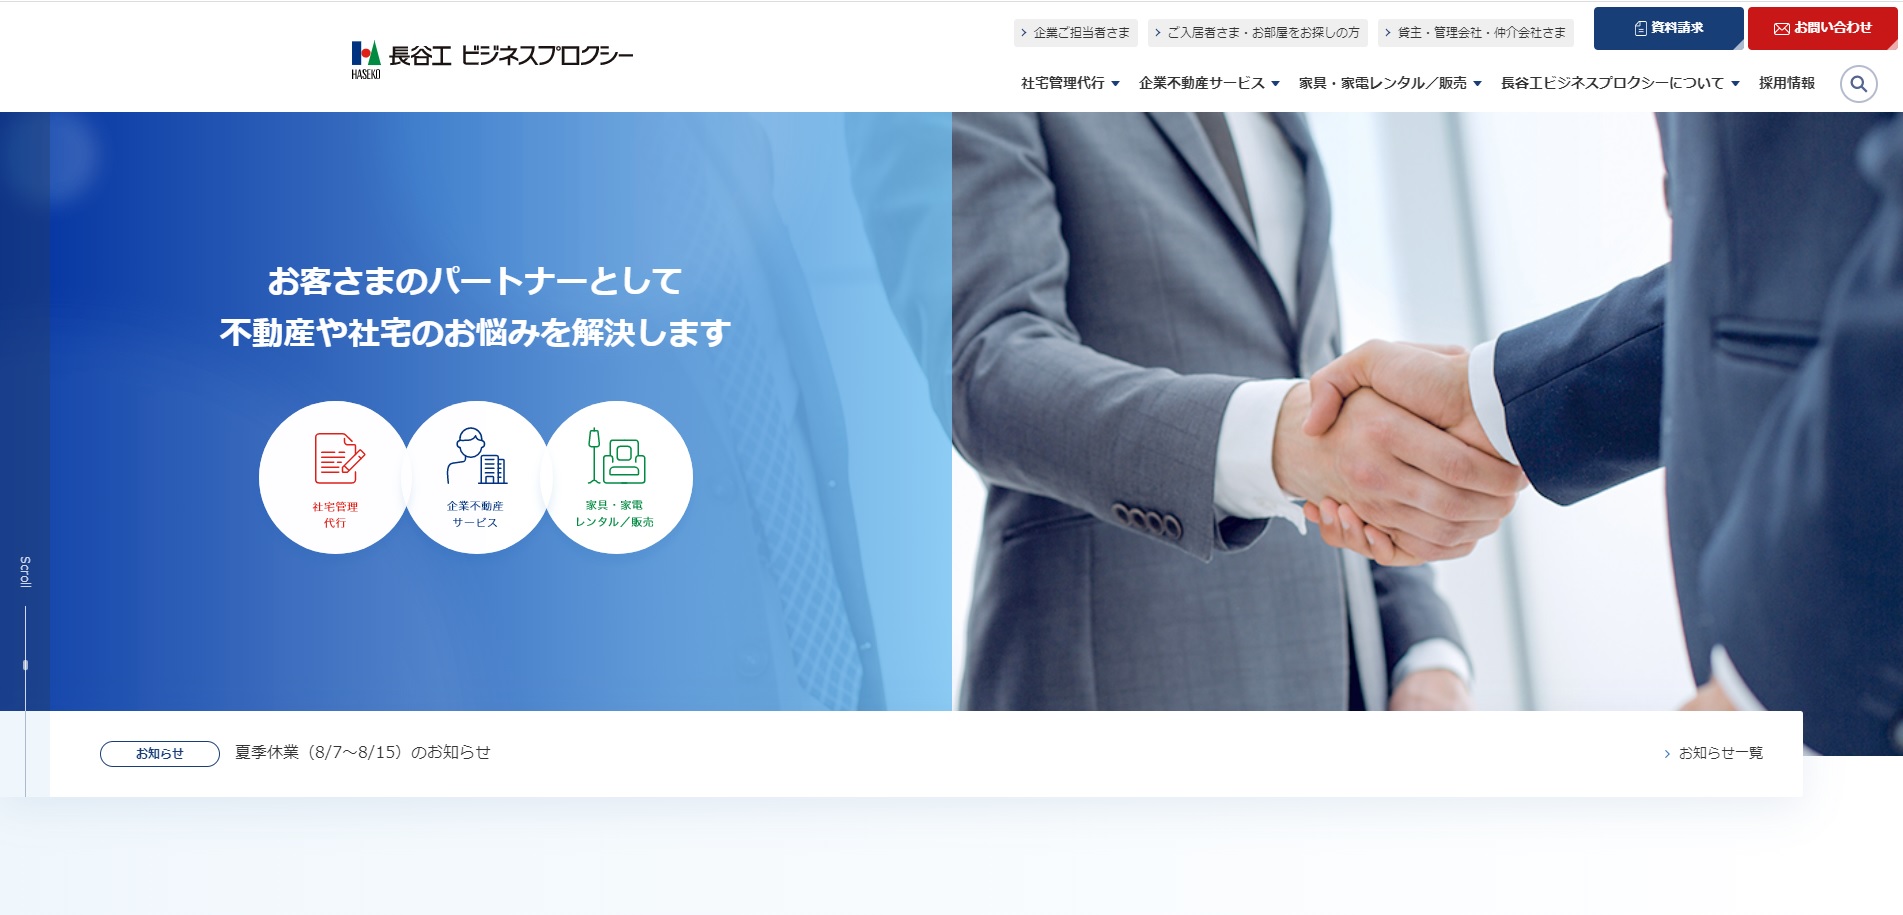 長谷工ビジネスプロクシーの公式サイト画像